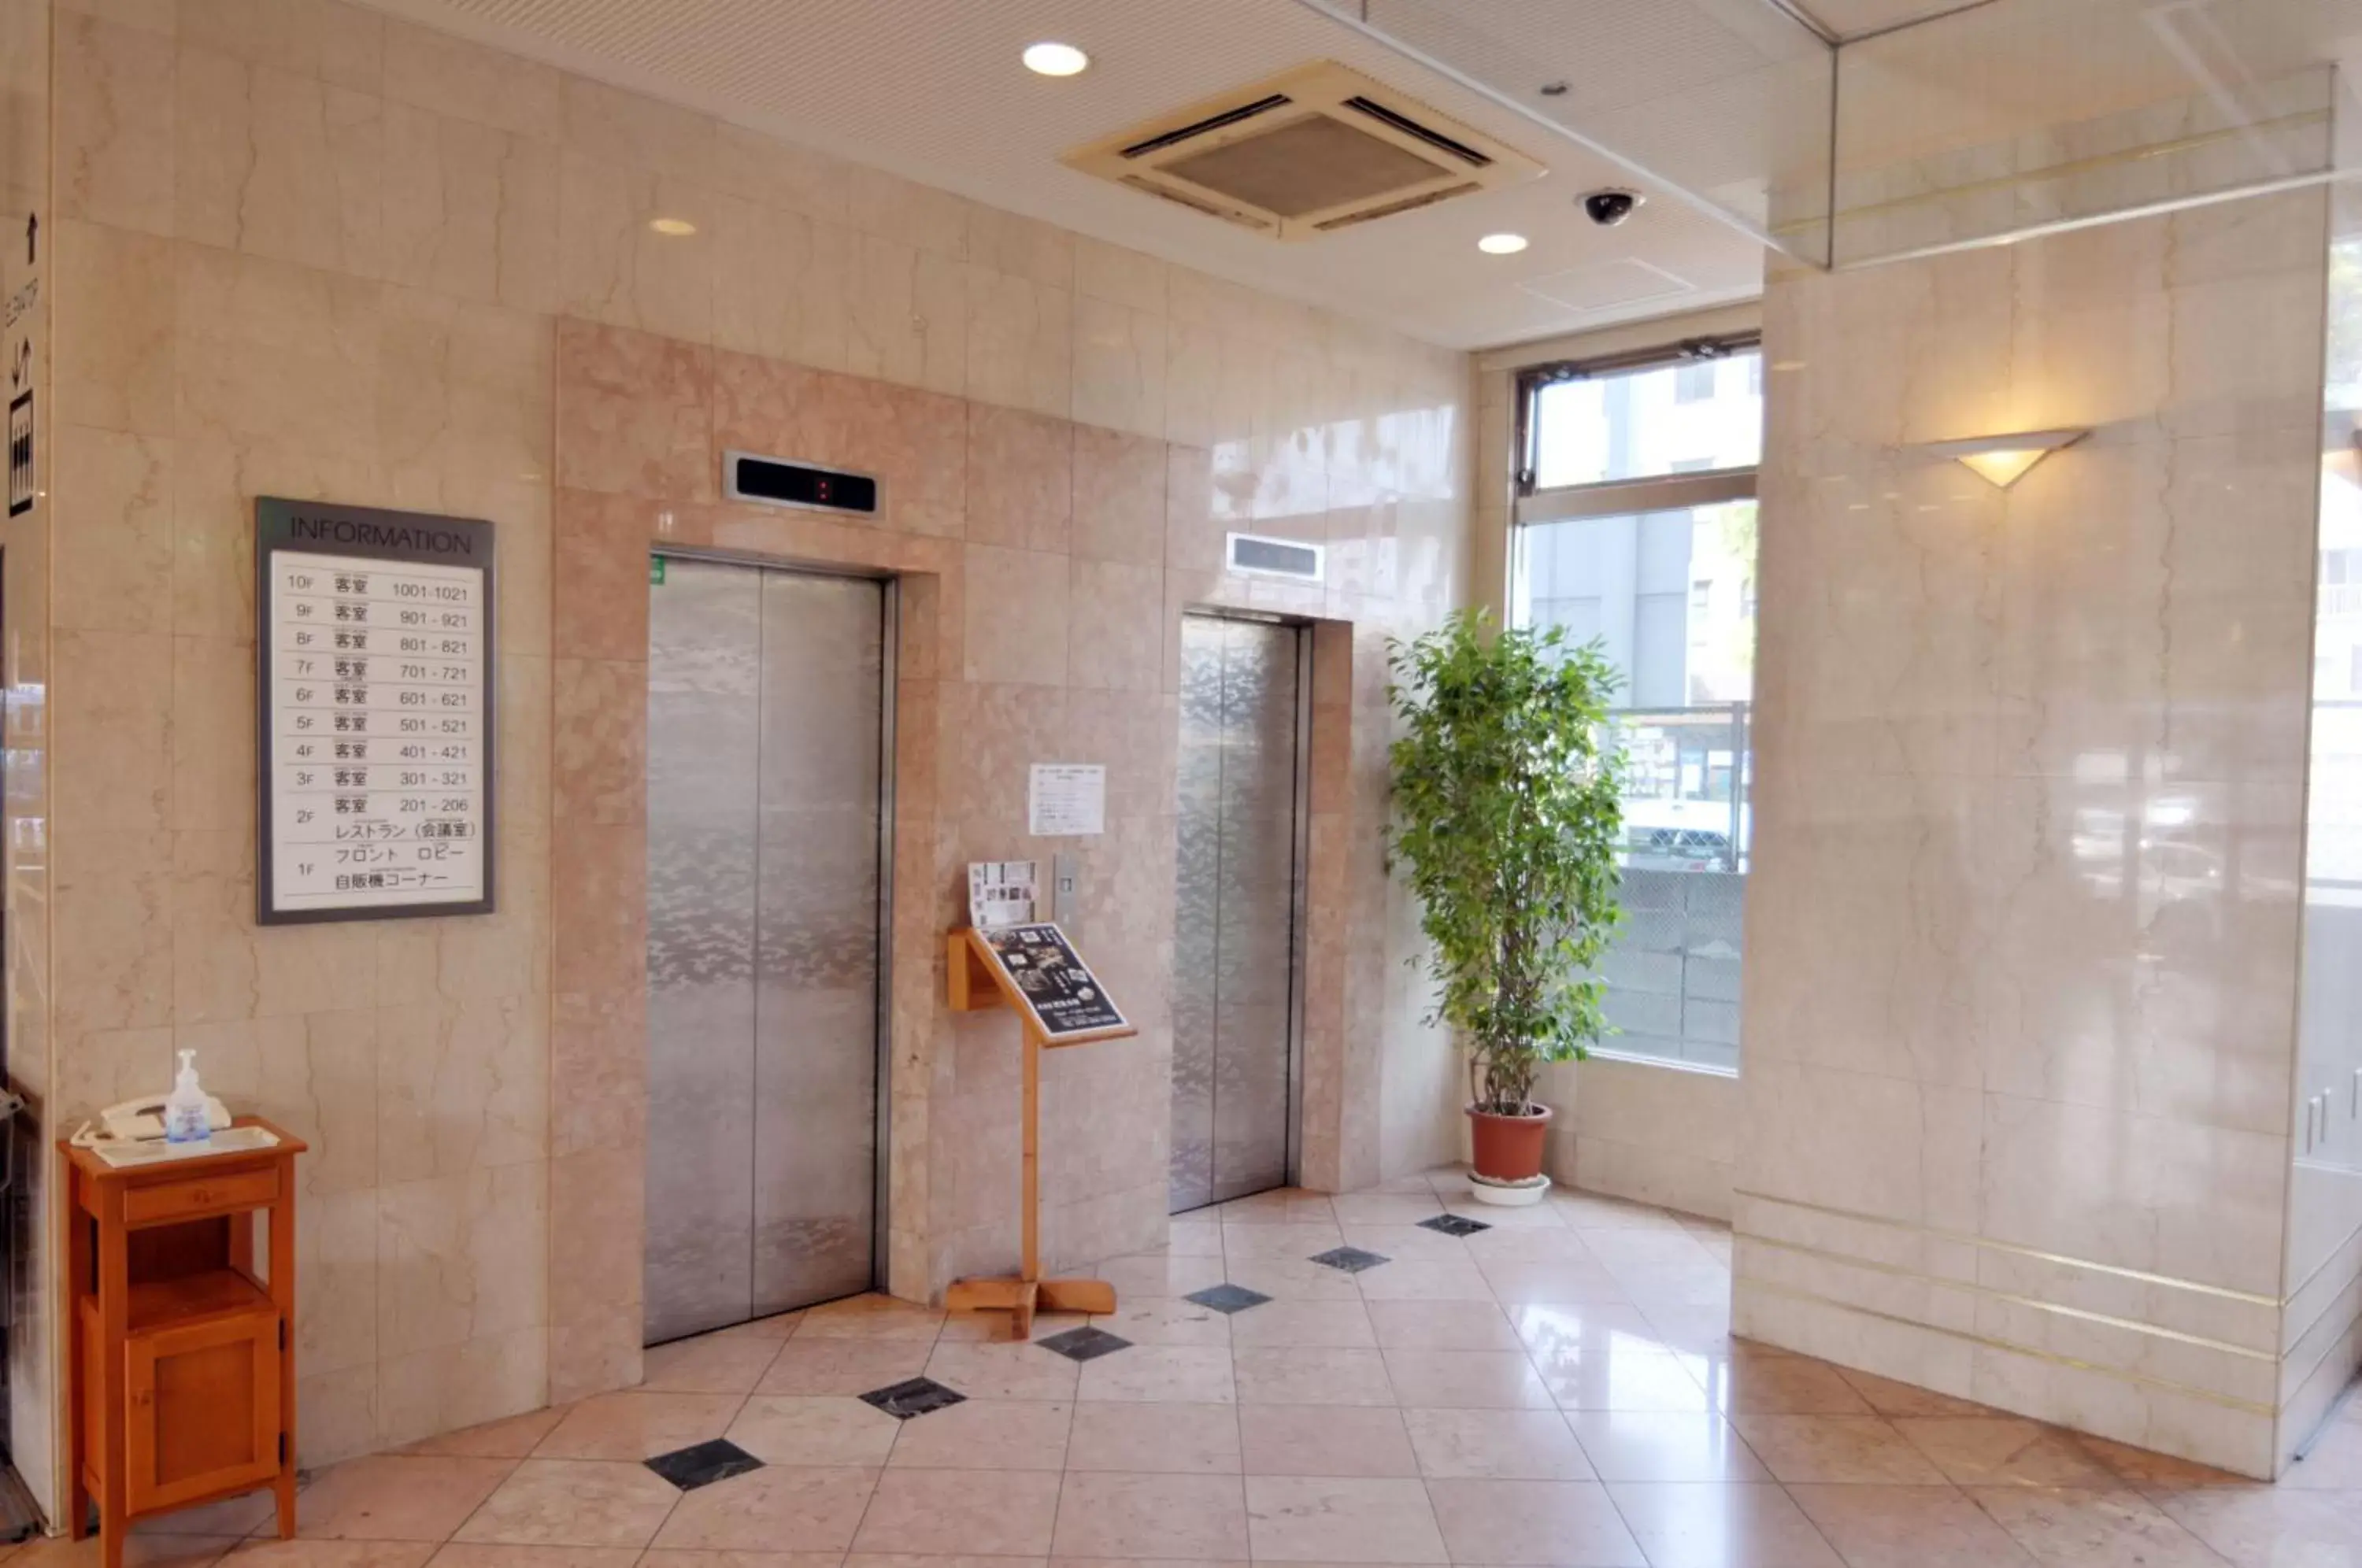 Lobby or reception, Bathroom in Kenchomae Green Hotel